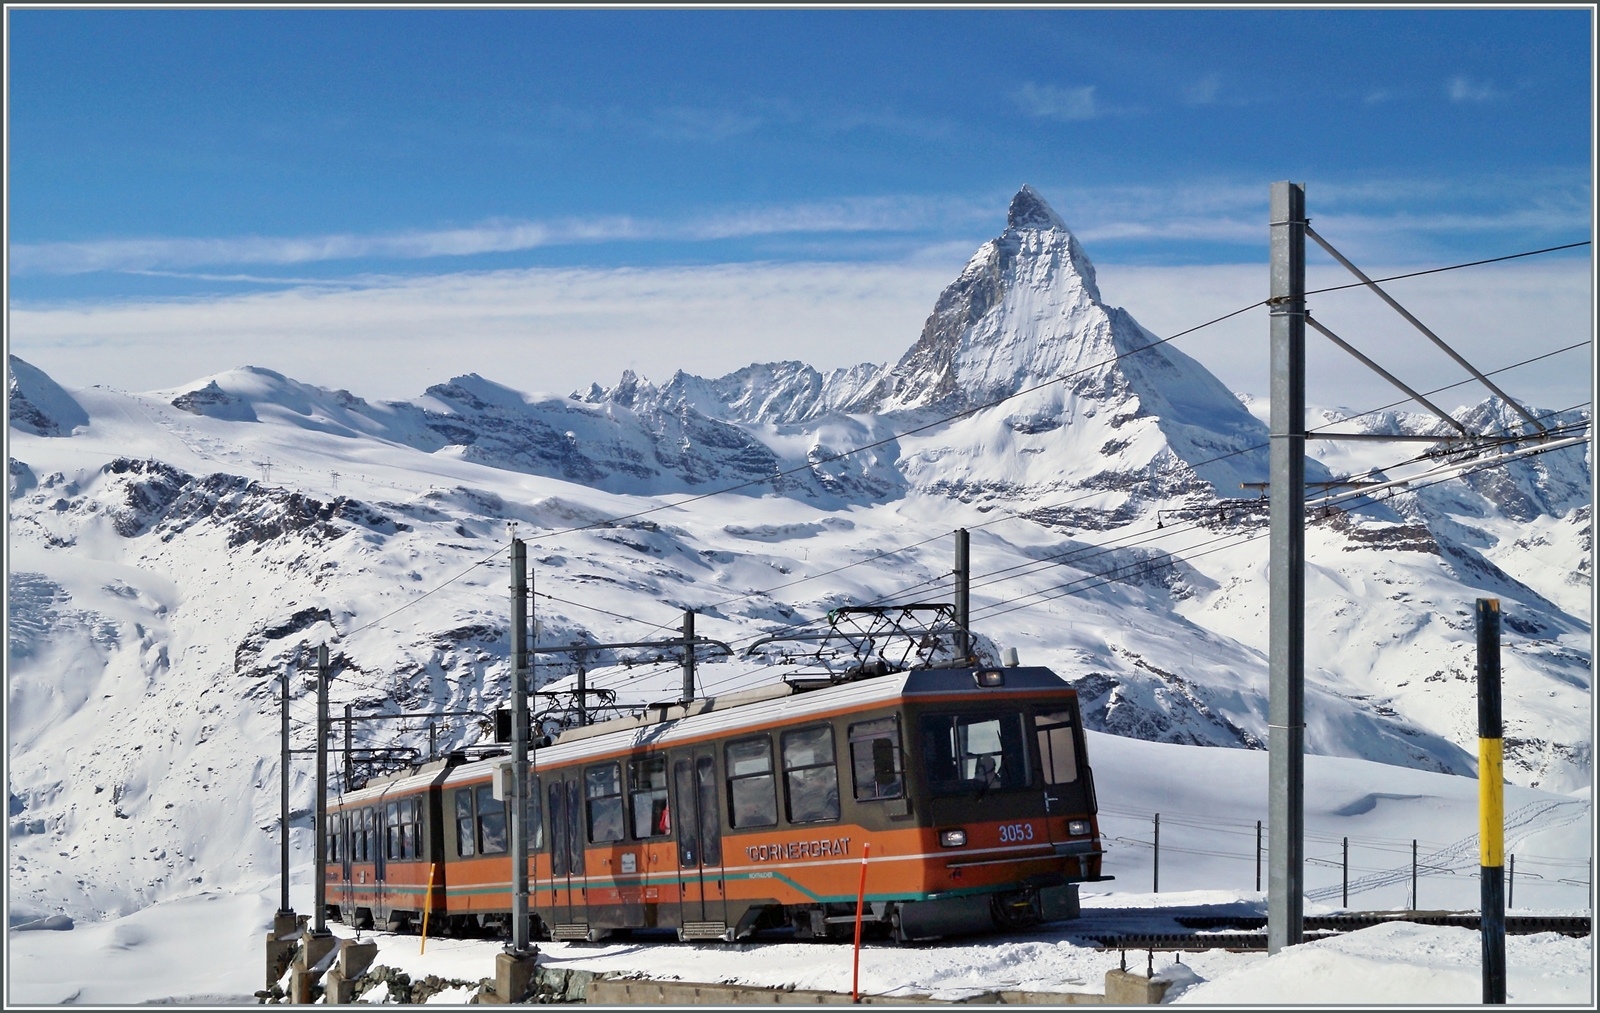 Zwei GGB Bhe 4/8 mit dem Bhe 4/8 3053 an der Spitze, erreichen von Zermatt her kommend in Kürze ihr Ziel Gornergrat. Im Hintergrund das Matterhorn, welches auch die Grenze zu Italien markiert; dahinter liegt das Aostatal. 

27. Februar 2014 